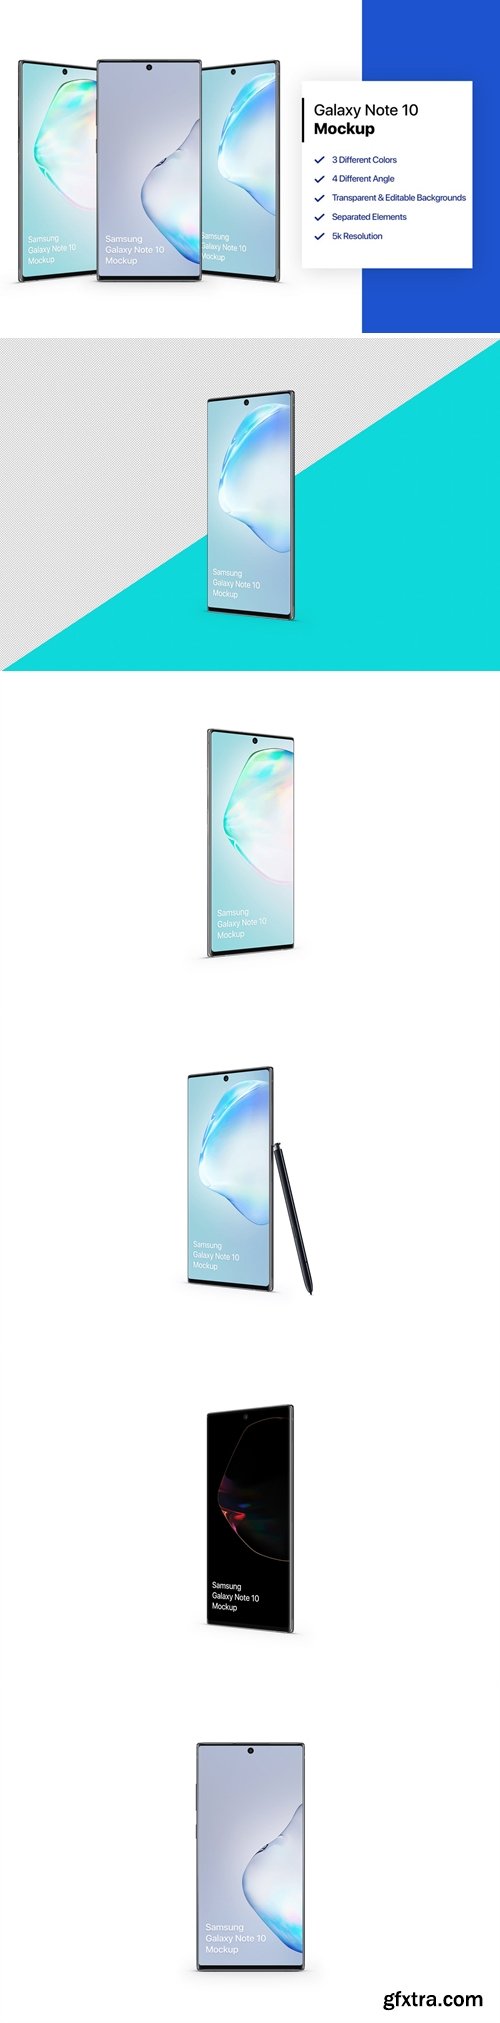 Samsung Galaxy Note 10 Mockup 1.0